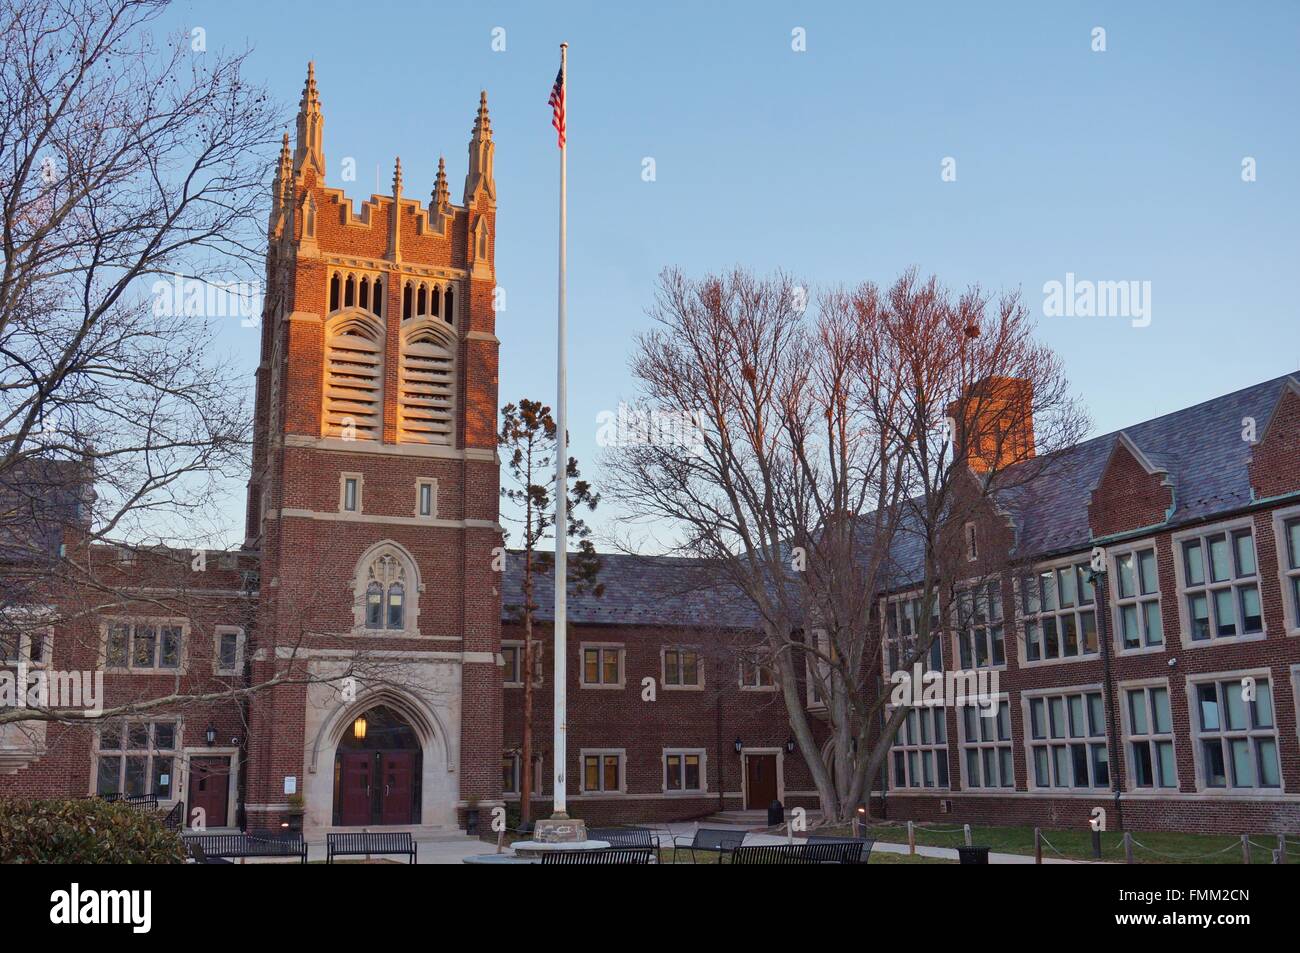 Princeton High School, gelegen in Princeton New Jersey, einer der besten umfassenden öffentlichen High Schools in den USA Stockfoto